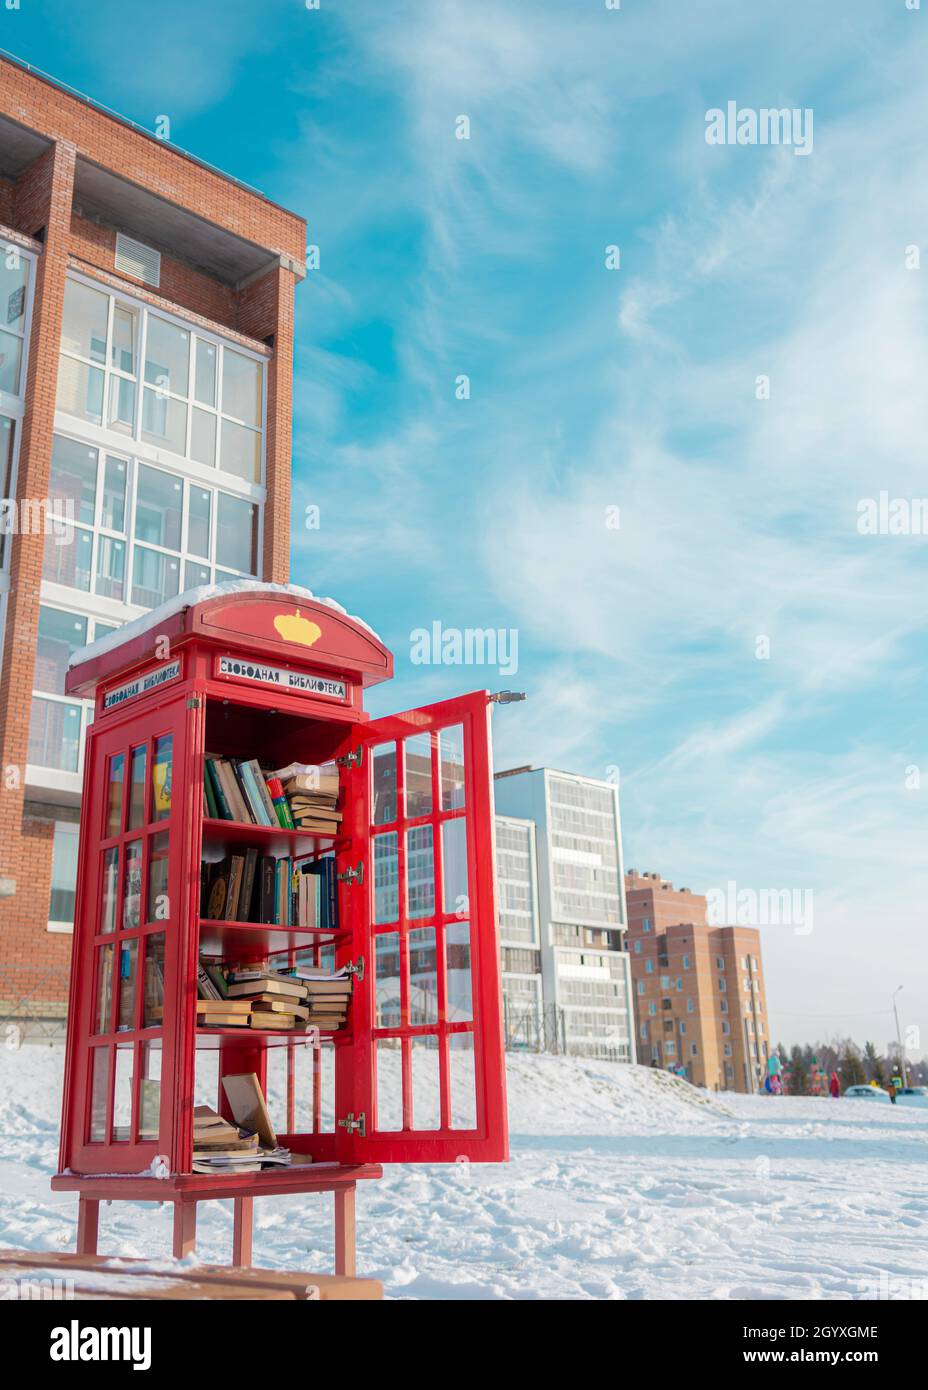 Tomsk, Russia, 15 novembre 2020: La libreria in stile telefono con nota in russo libero scambio di libri Foto Stock